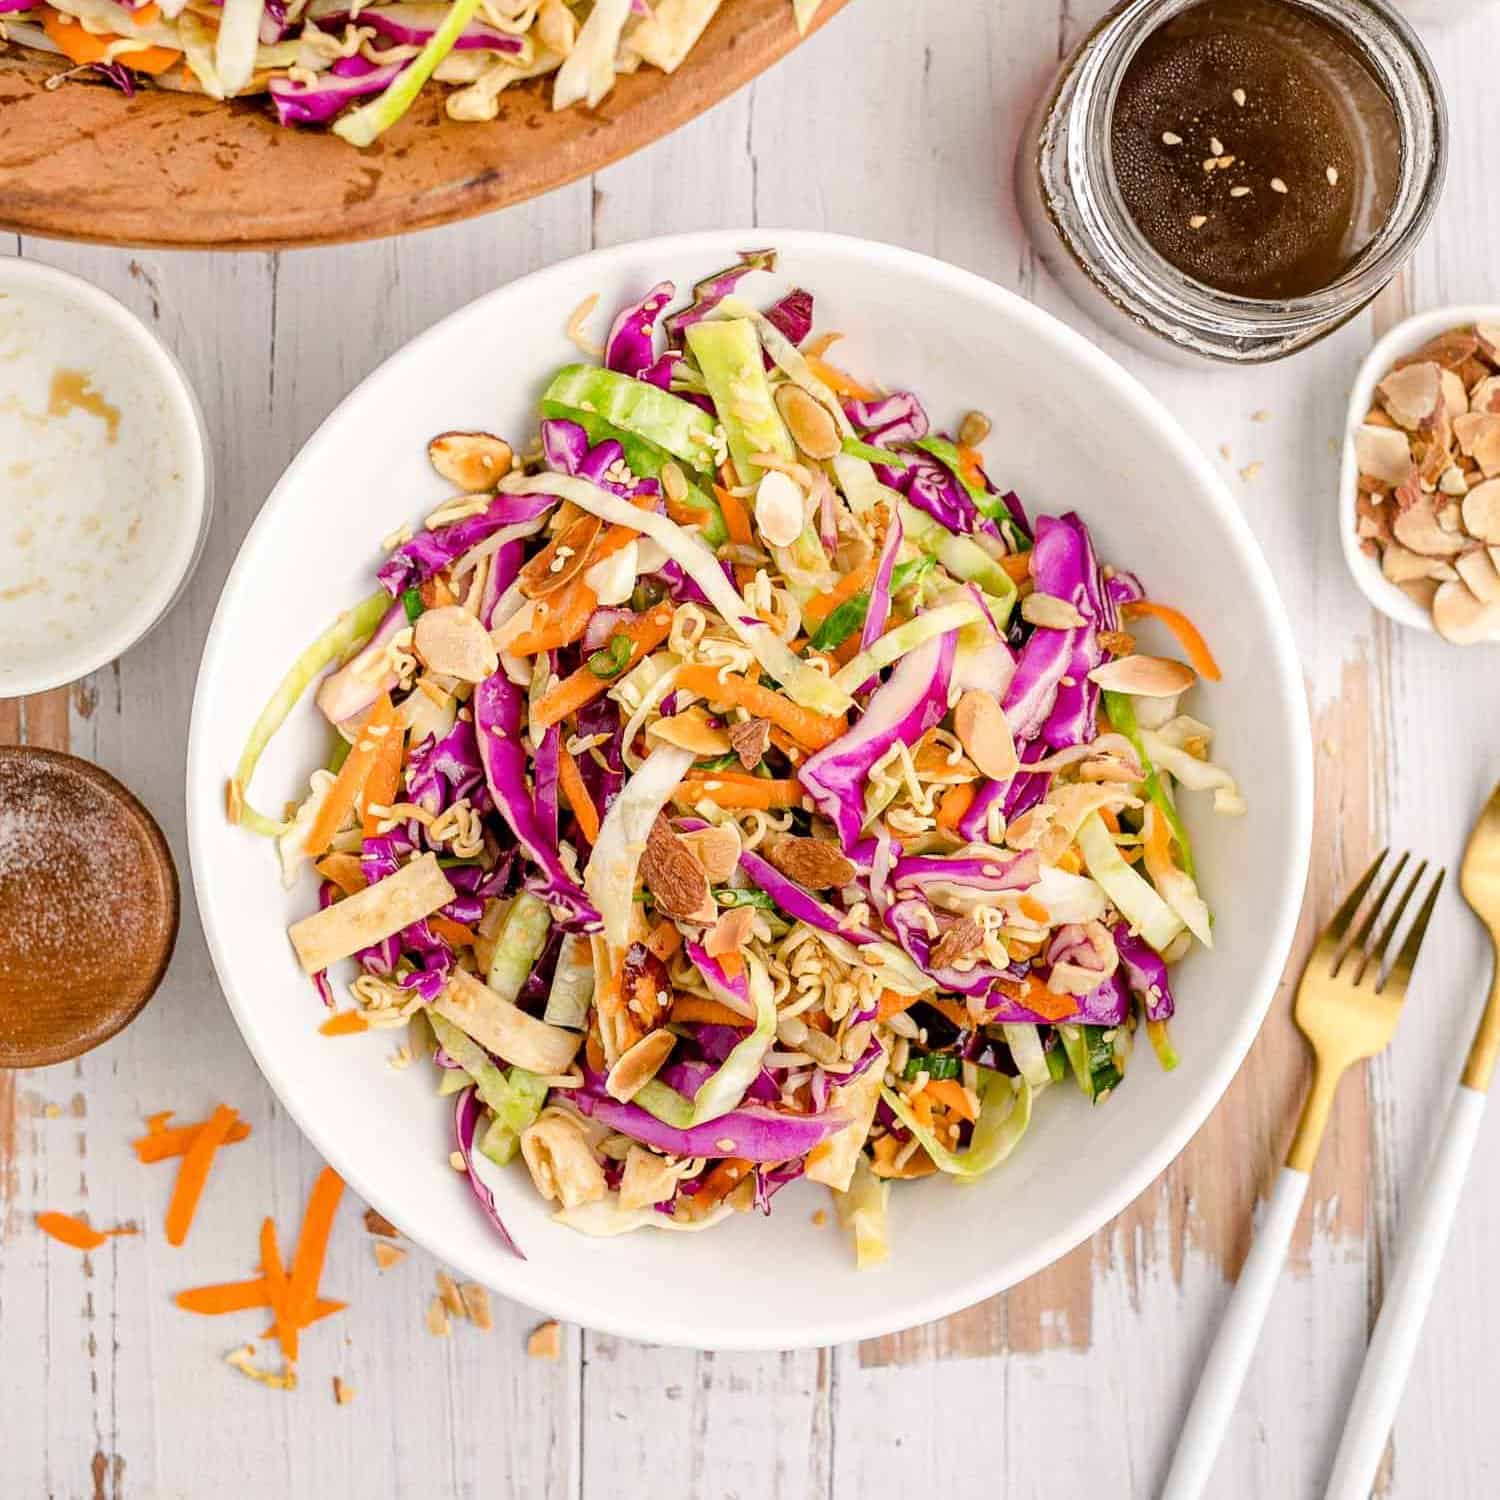 Salad Crunchy & Flavorful! - Rachel